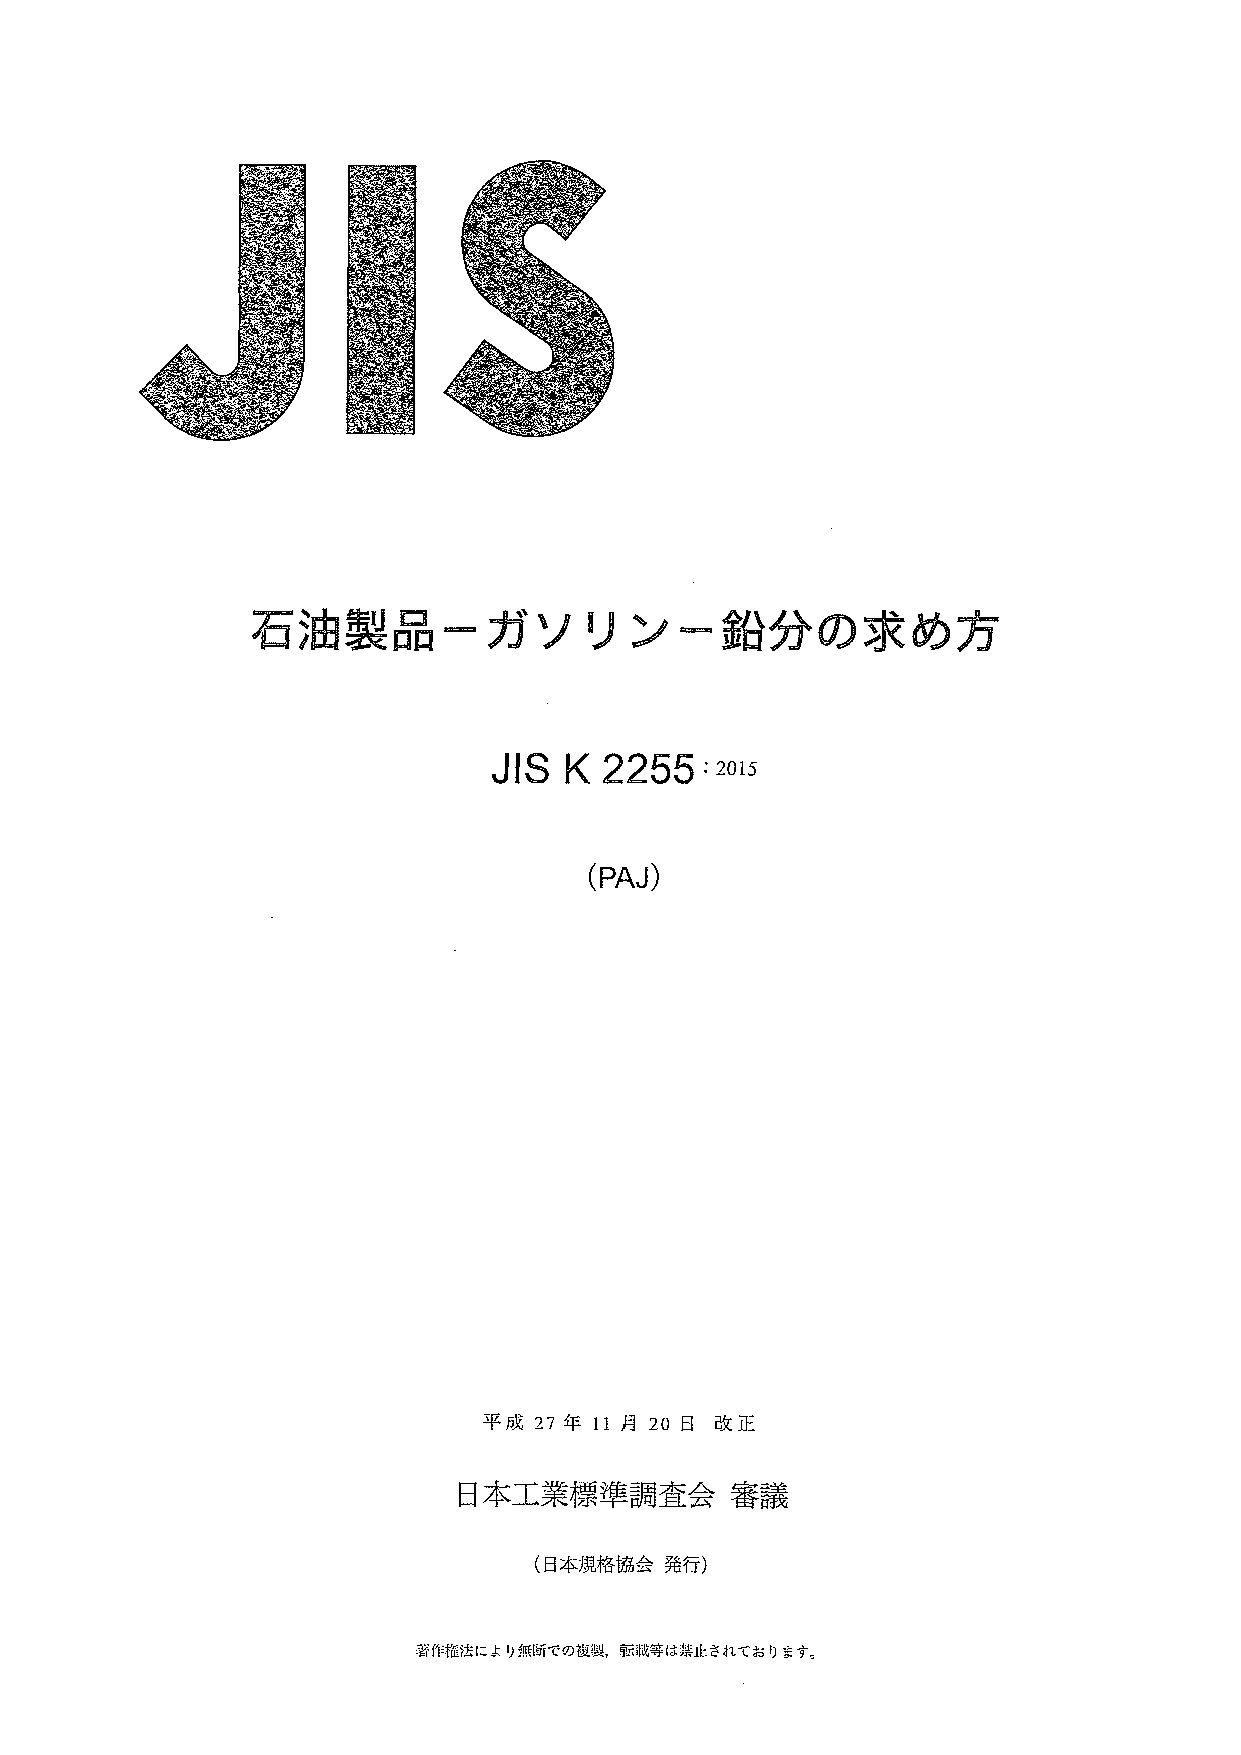 JIS K 2255:2015封面图